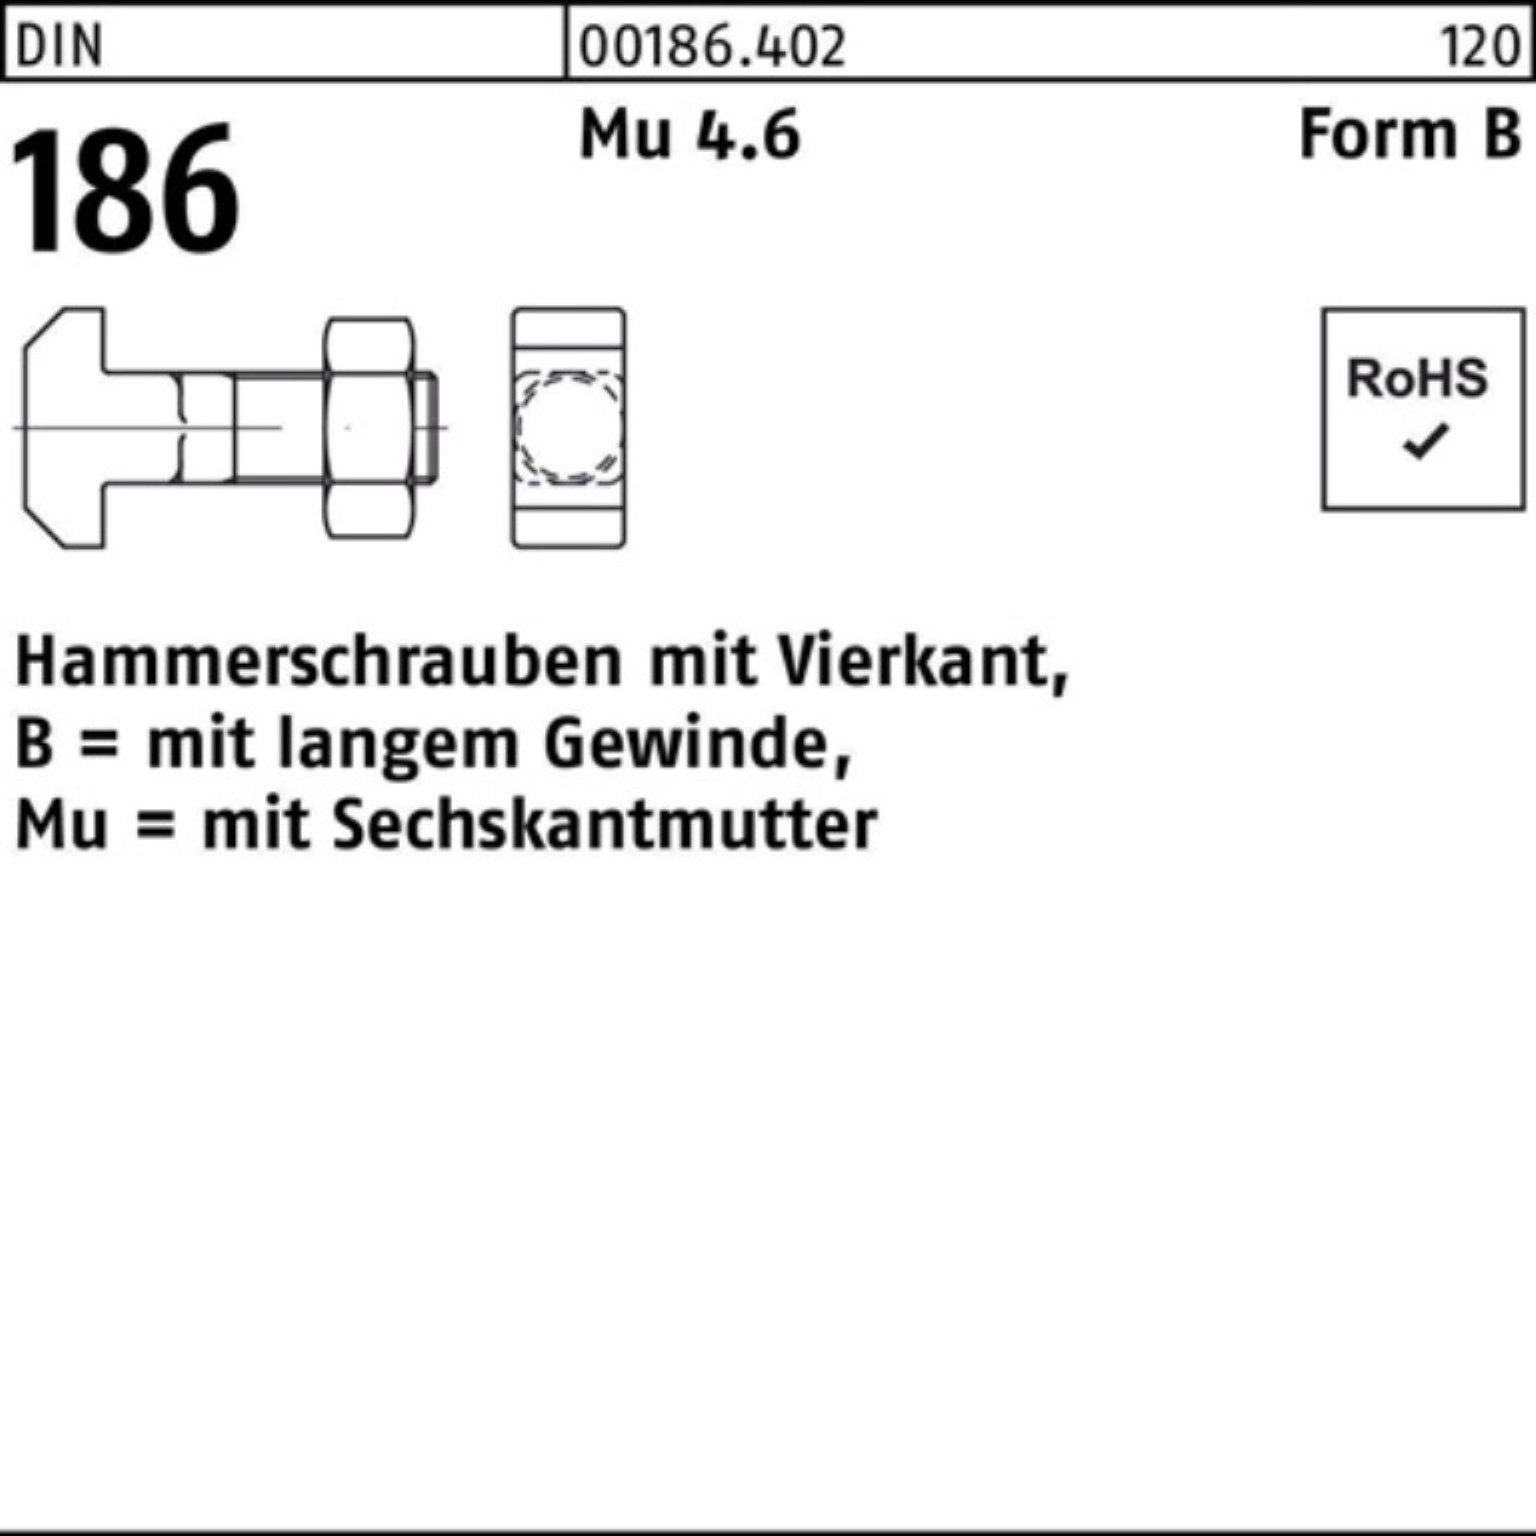 186 Schraube Reyher 12x DIN BM Hammerschraube Pack 30 Vierkant 6-ktmutter 100er FormB